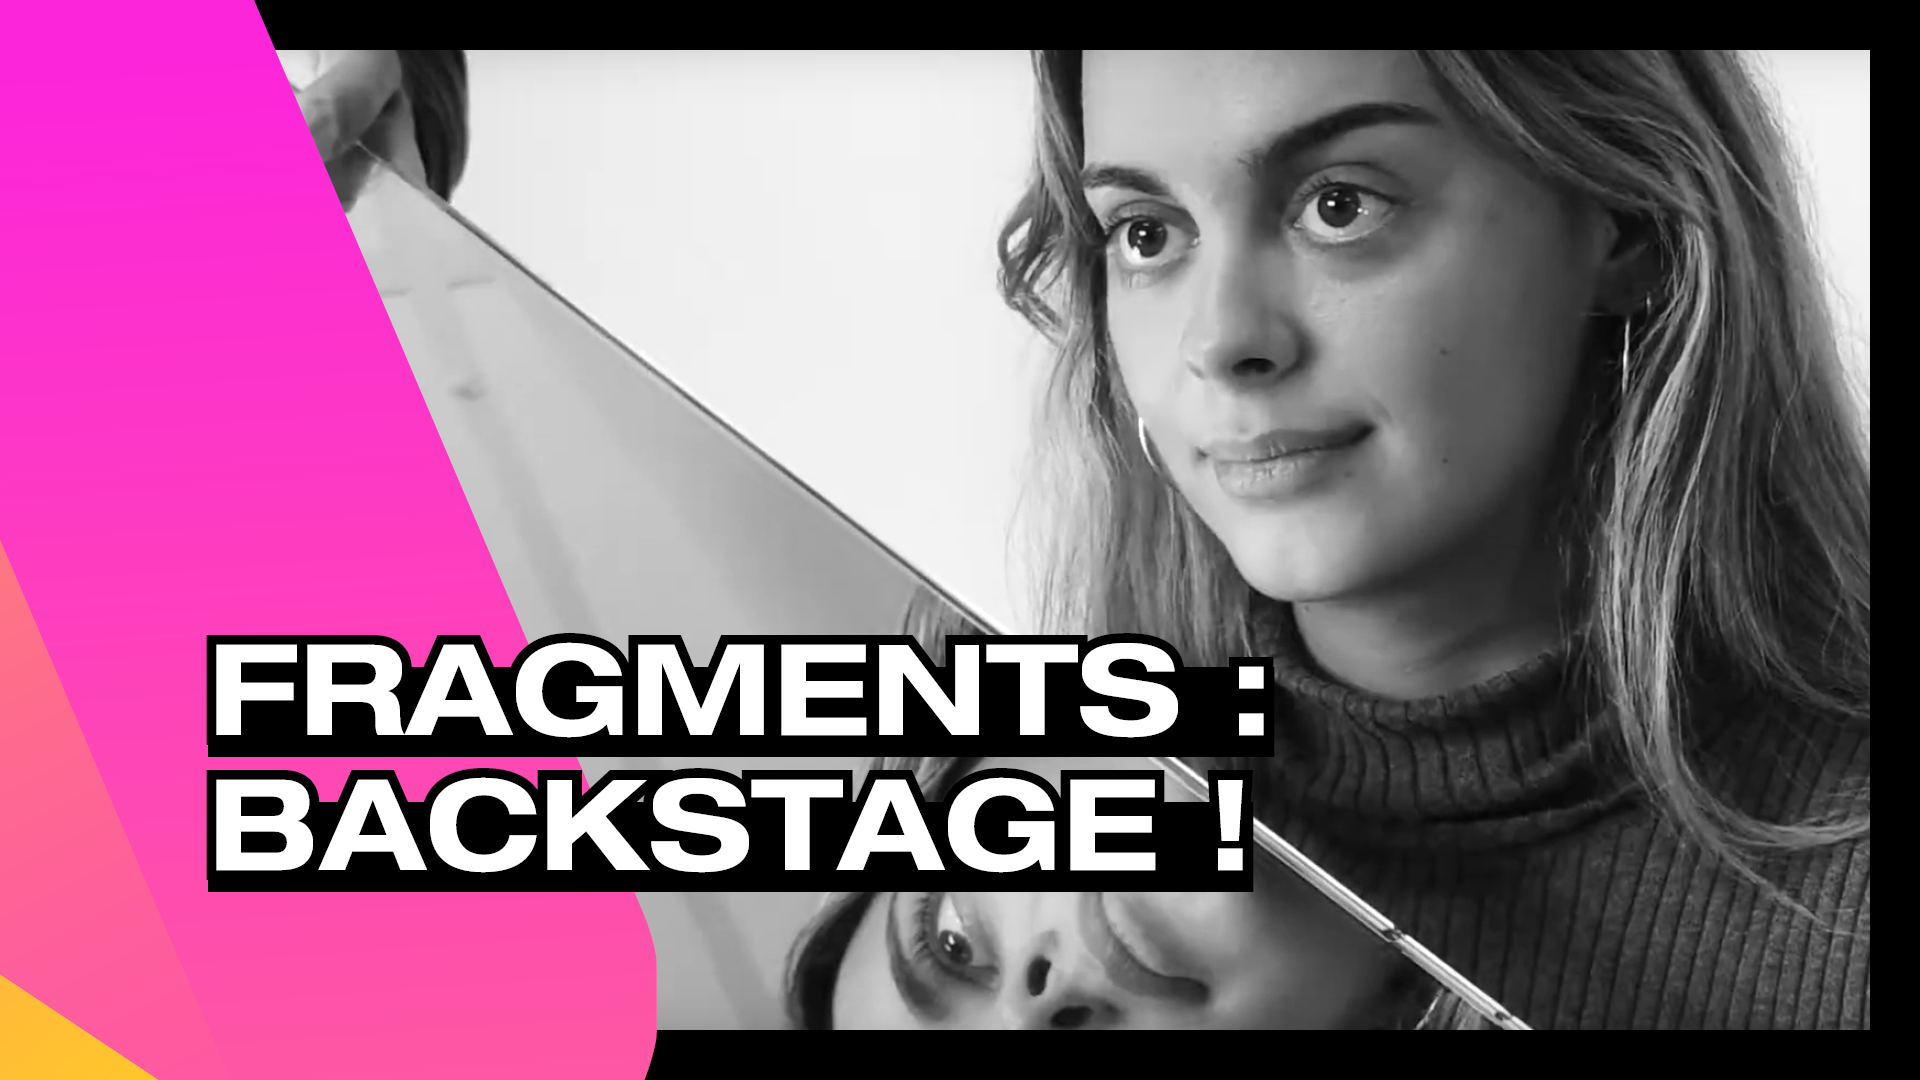 Fragments - Backstage !Fragments – Backstage !